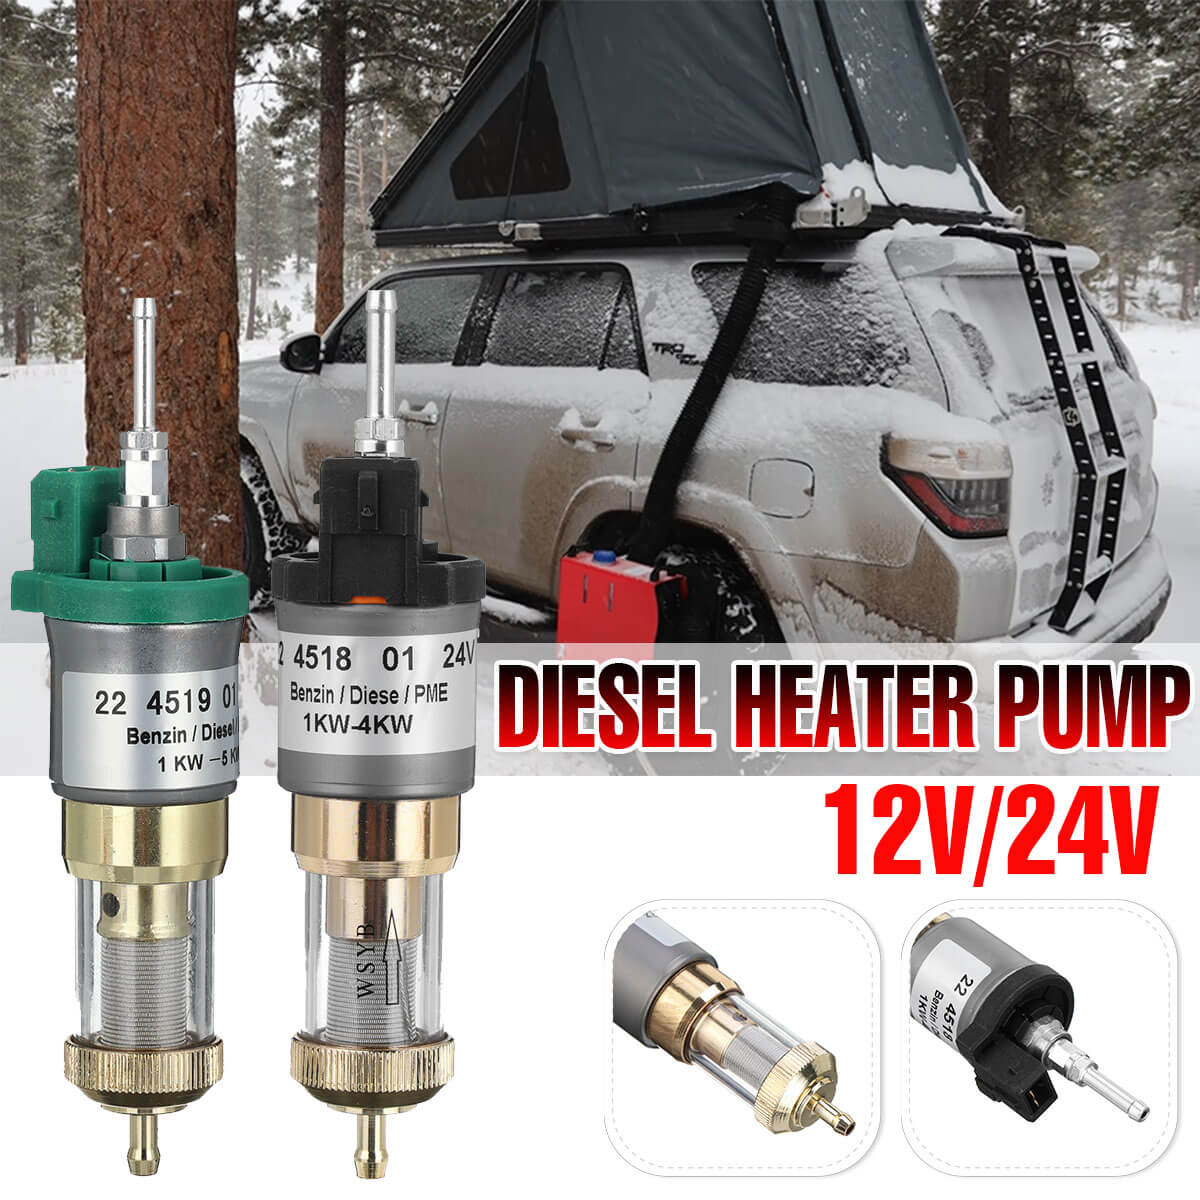 Pompe à carburant A5, élément de filtre diesel 12v / 24 V